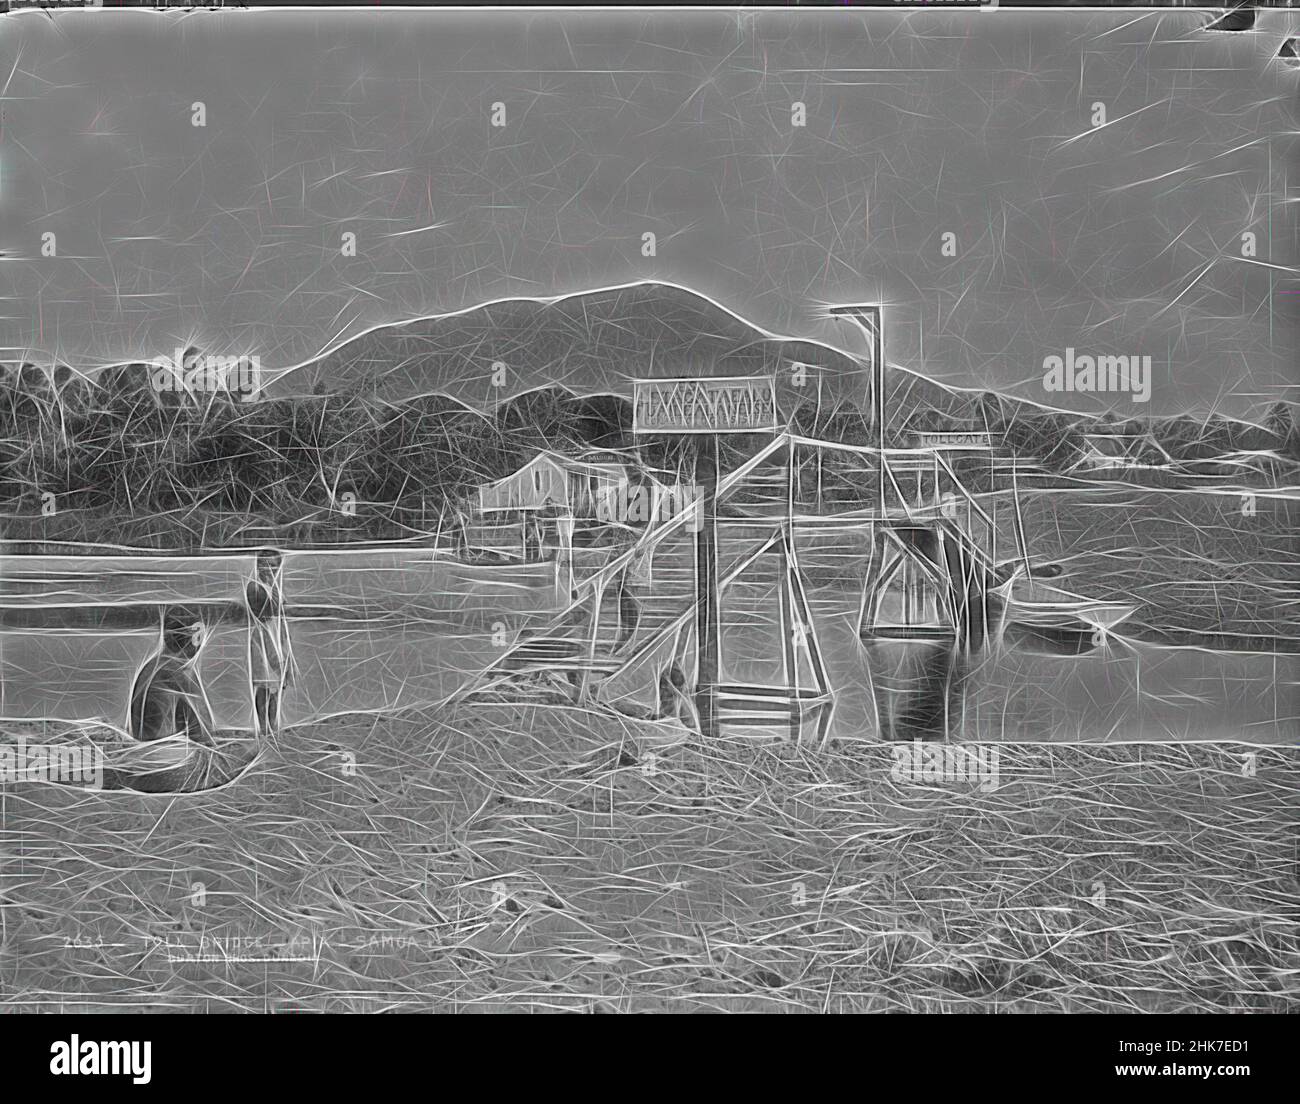 Inspiré par Toll Bridge, Apia, Samoa, Burton Brothers studio, studio de photographie, 21 juillet 1884, Nouvelle-Zélande, photographie en noir et blanc, pont en bois sur une petite rivière. Un homme de Samoan se tient sur la rampe du pont, un autre à gauche sur la banque et un autre à gauche. En arrière-plan est un colonial, réimaginé par Artotop. L'art classique réinventé avec une touche moderne. Conception de lumière chaleureuse et gaie, de luminosité et de rayonnement de lumière. La photographie s'inspire du surréalisme et du futurisme, embrassant l'énergie dynamique de la technologie moderne, du mouvement, de la vitesse et révolutionne la culture Banque D'Images